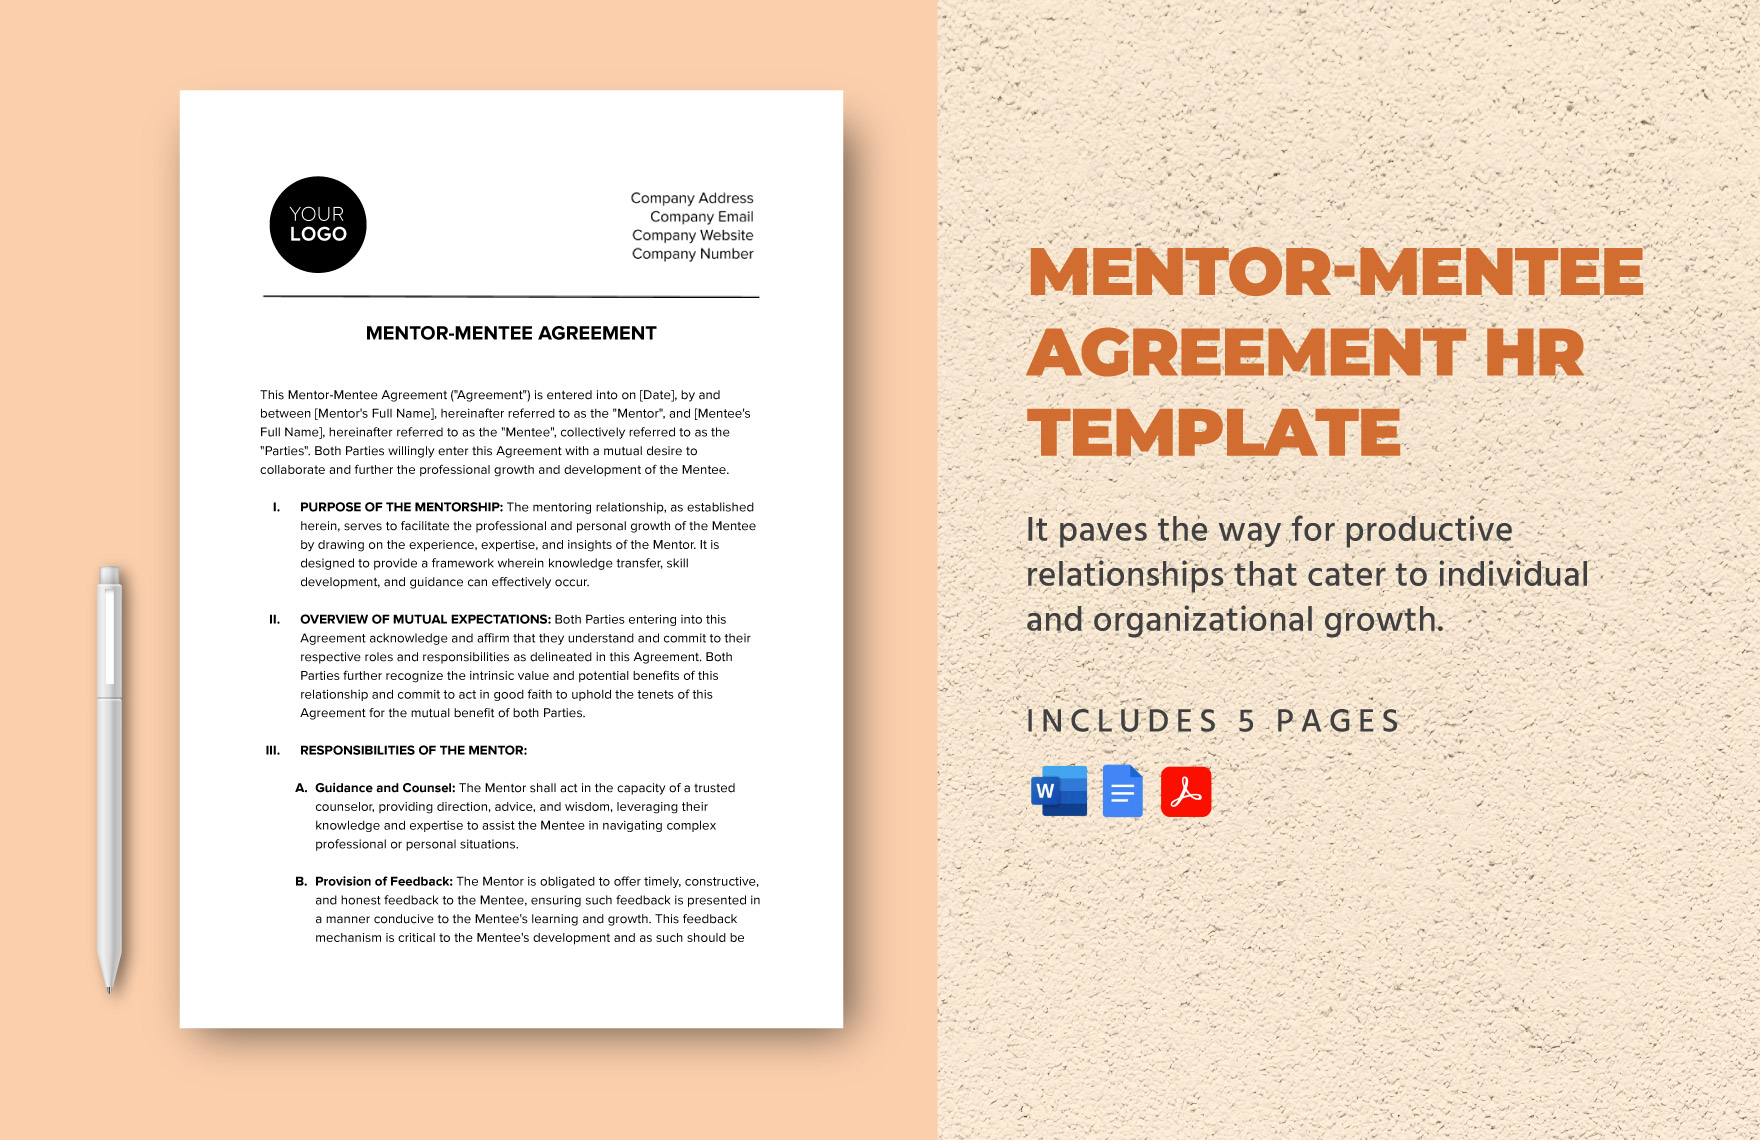 Mentor-Mentee Agreement HR Template